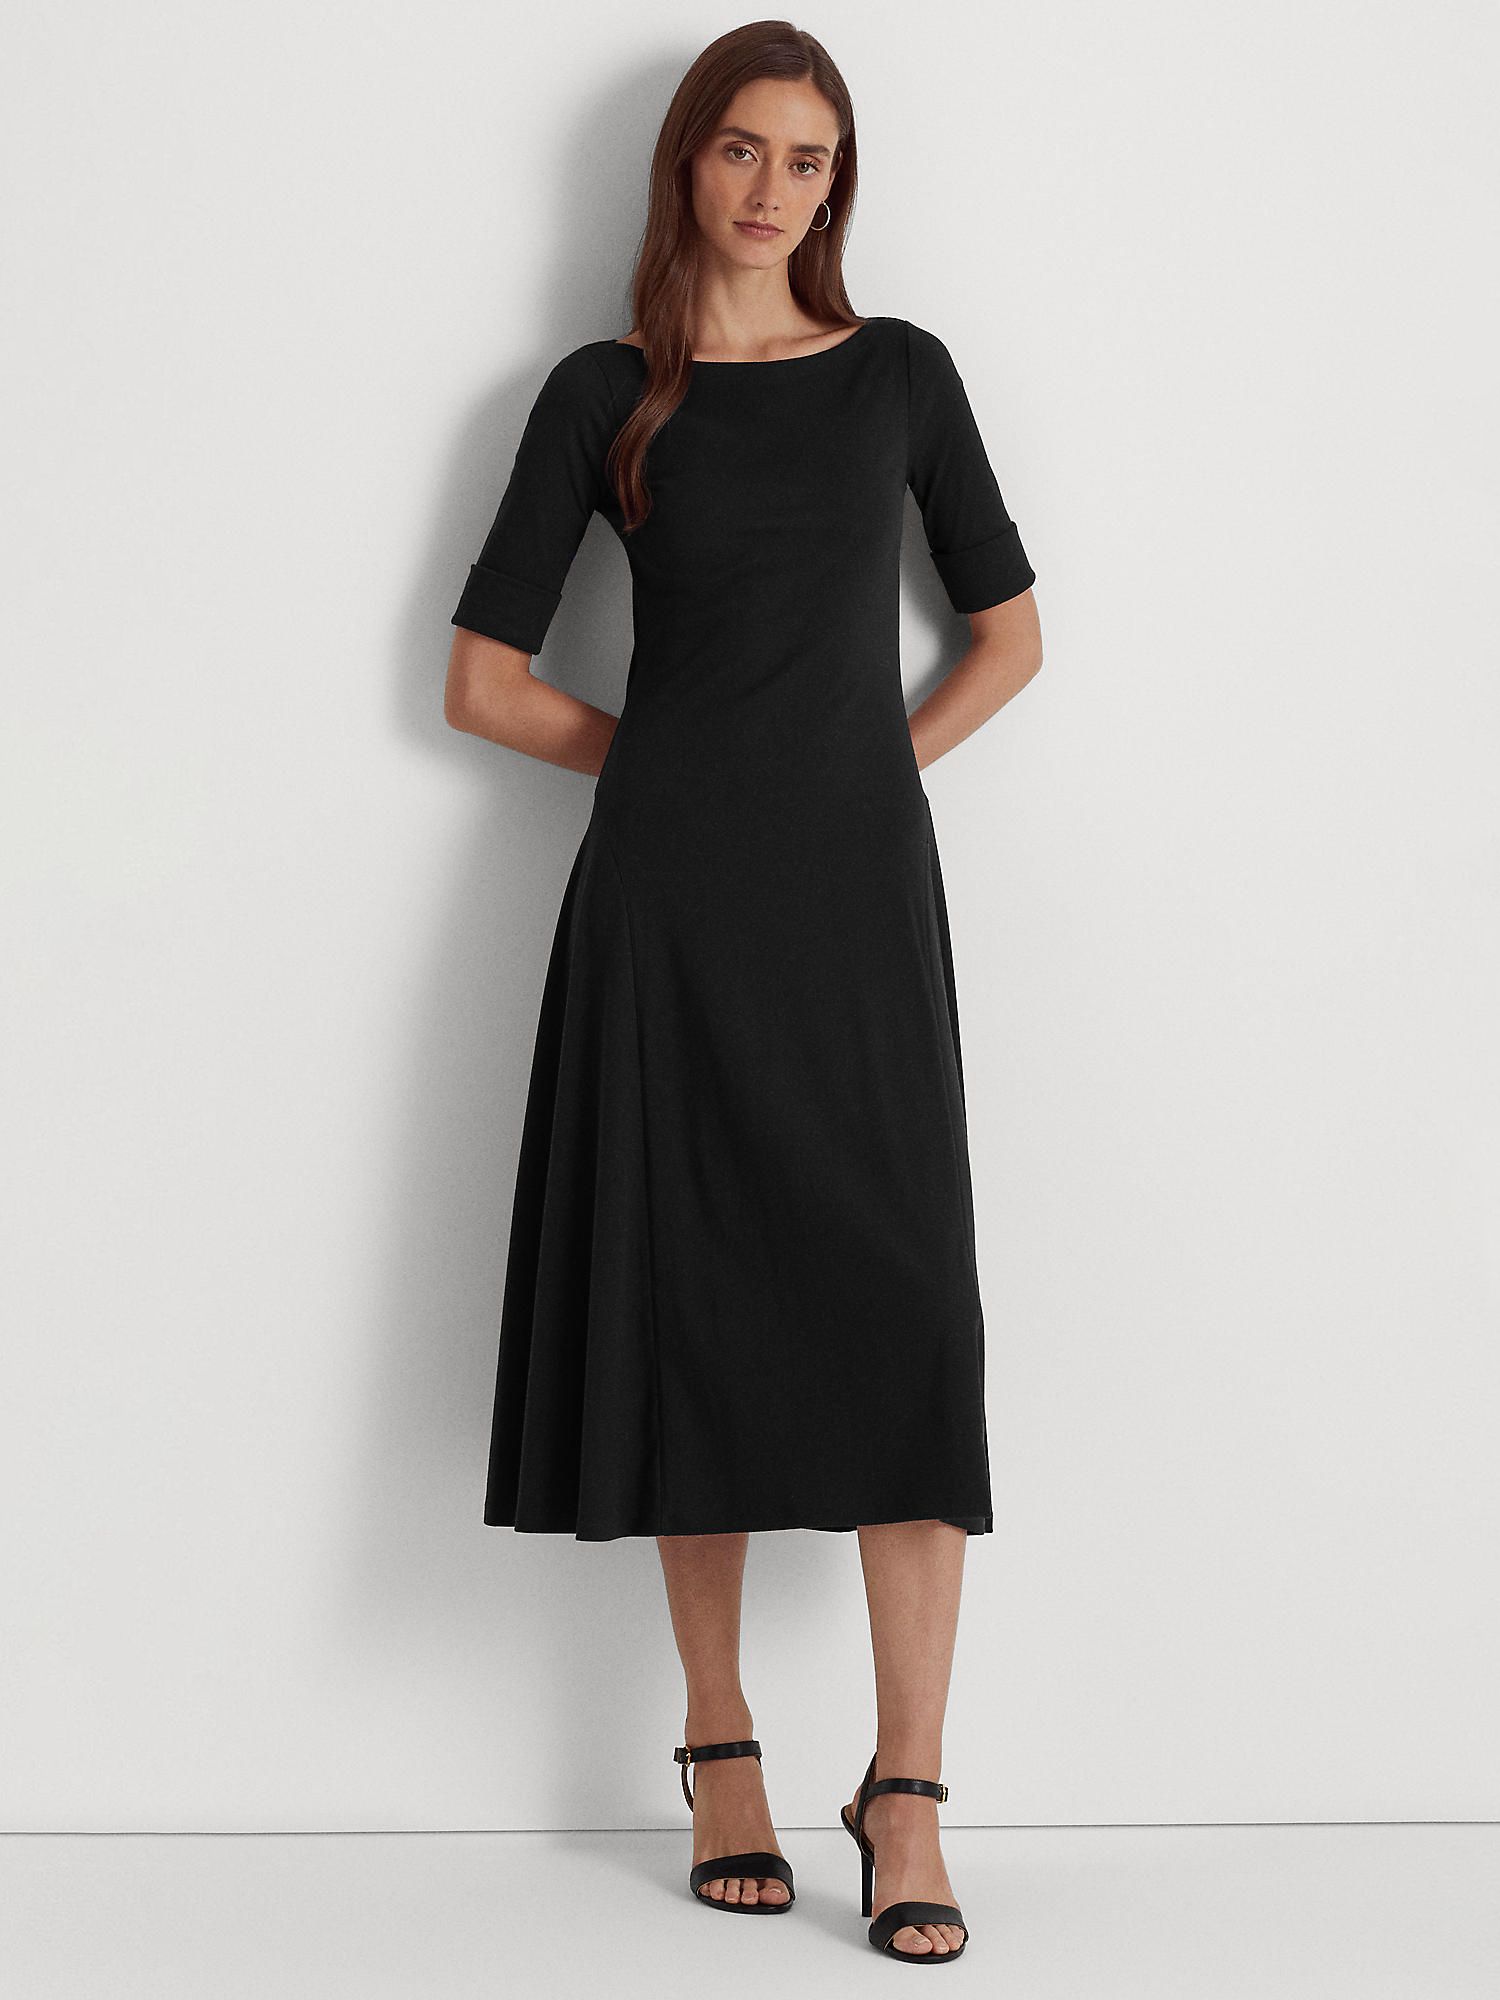 Women's Ralph Lauren Dresses | John Lewis u0026 Partners